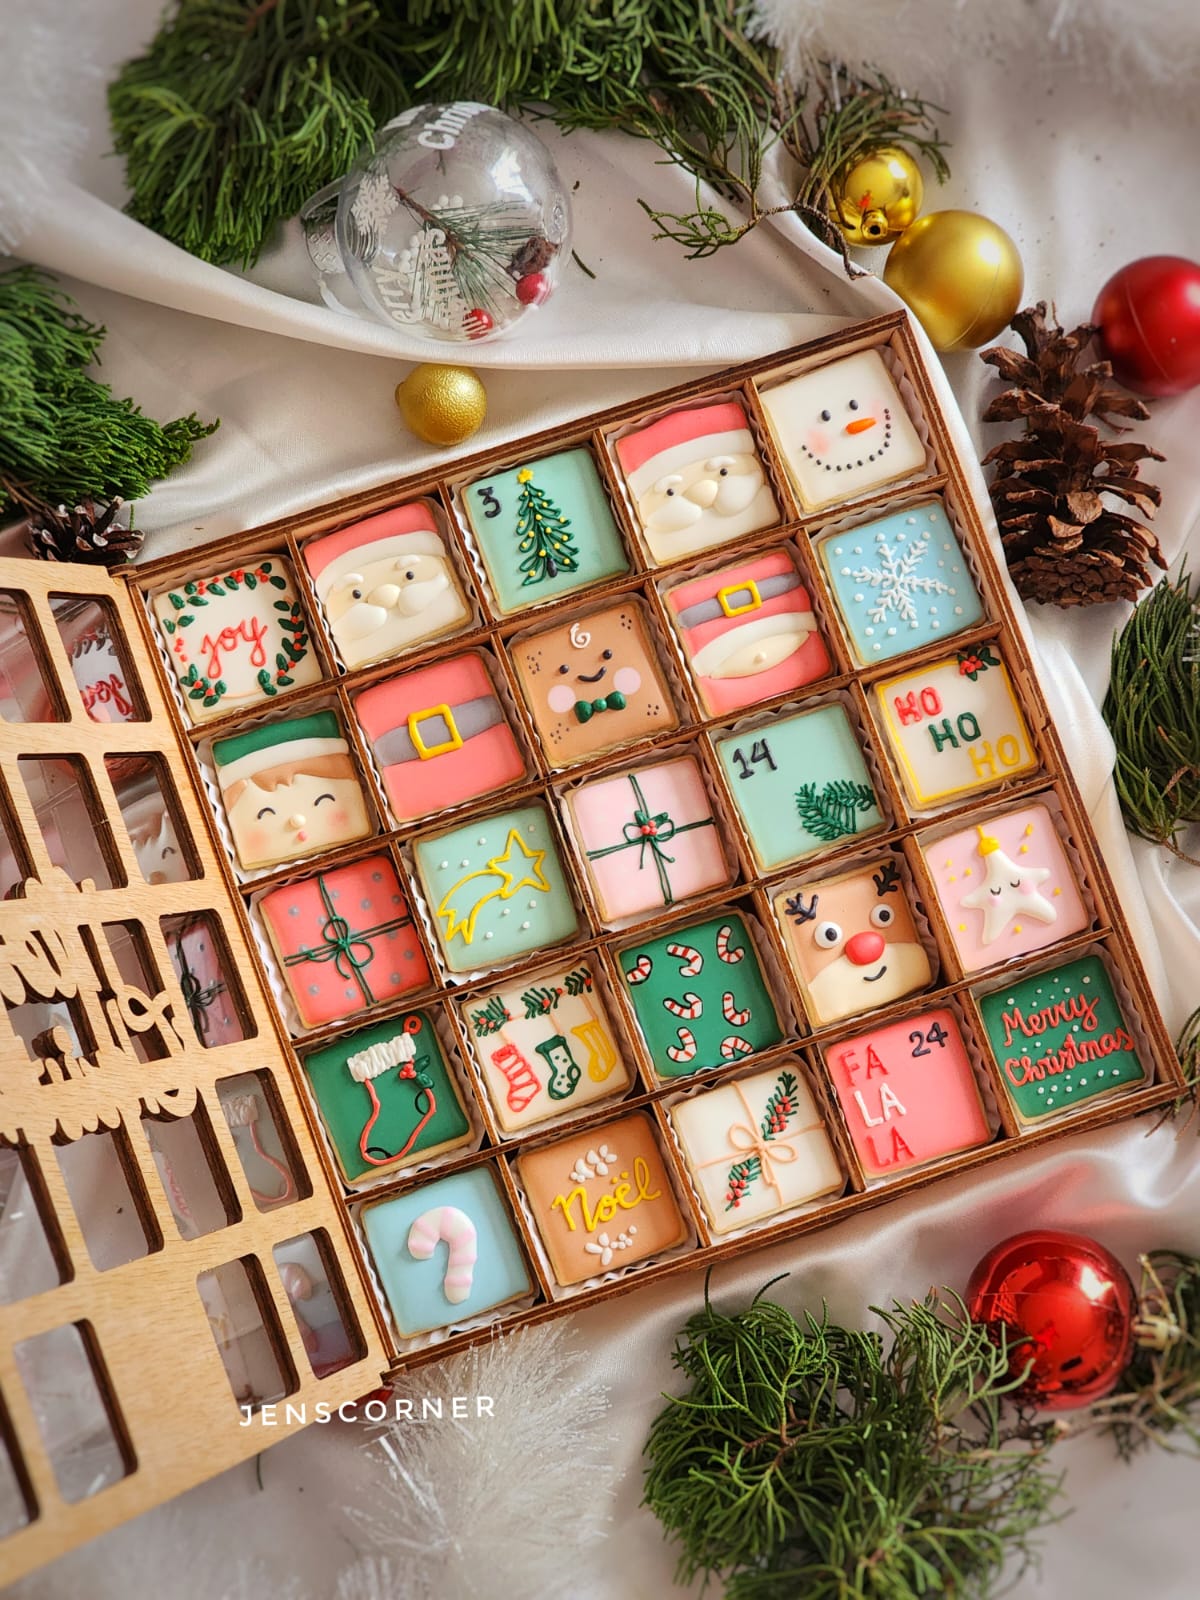 Advent Calendar Icing Cookies - Jen'scorner